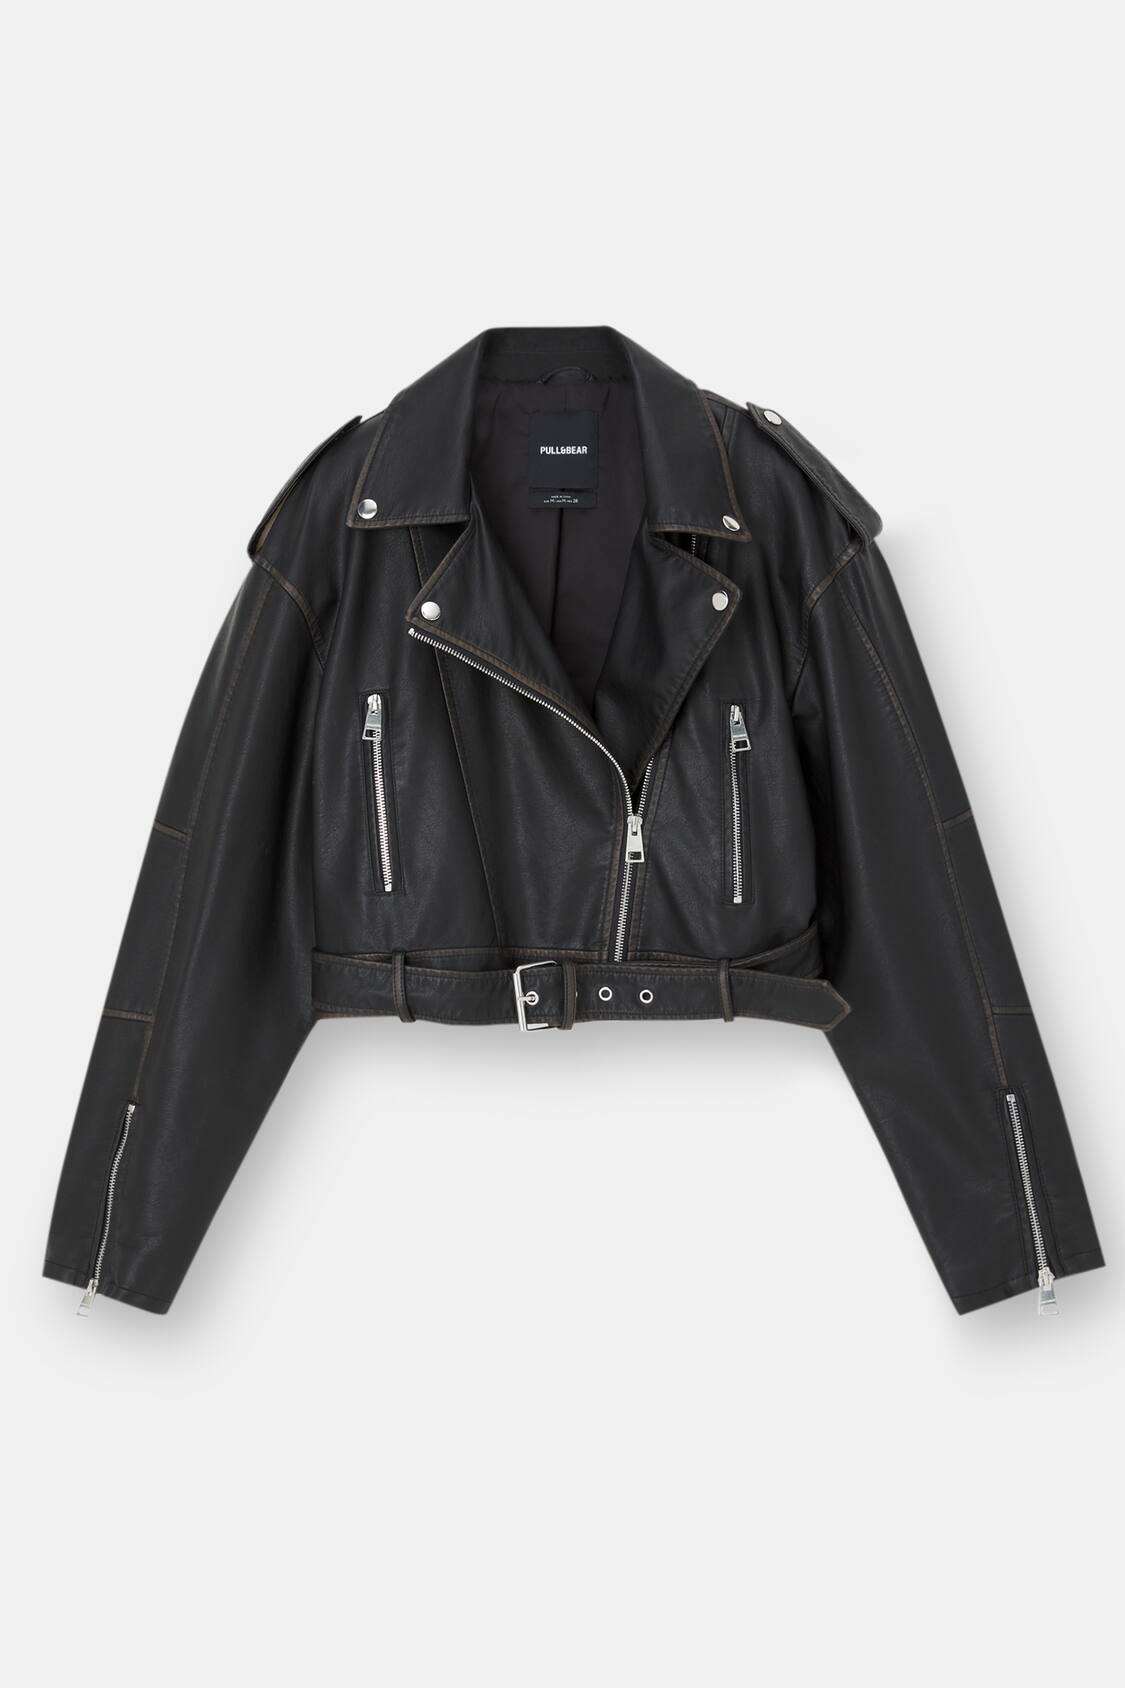 Pull&Bear Women's' Black Oversize Faux Leather Biker Jacket